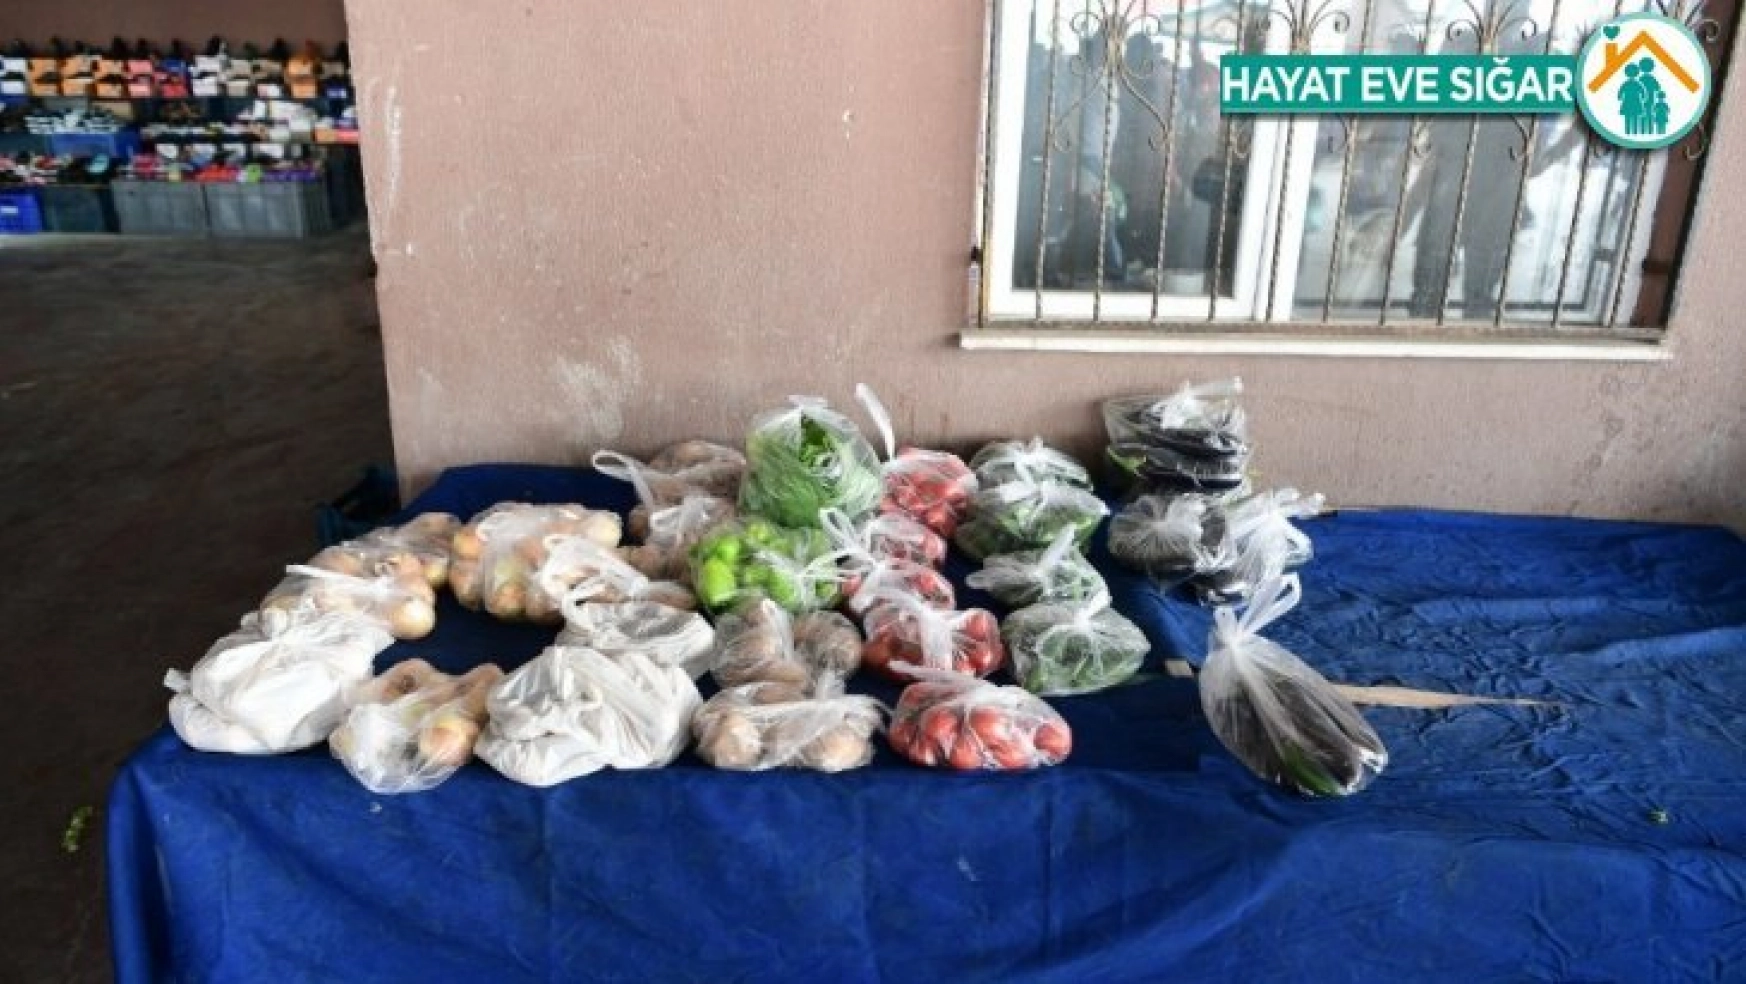 Mamak Belediyesinden askıda yiyecek uygulaması